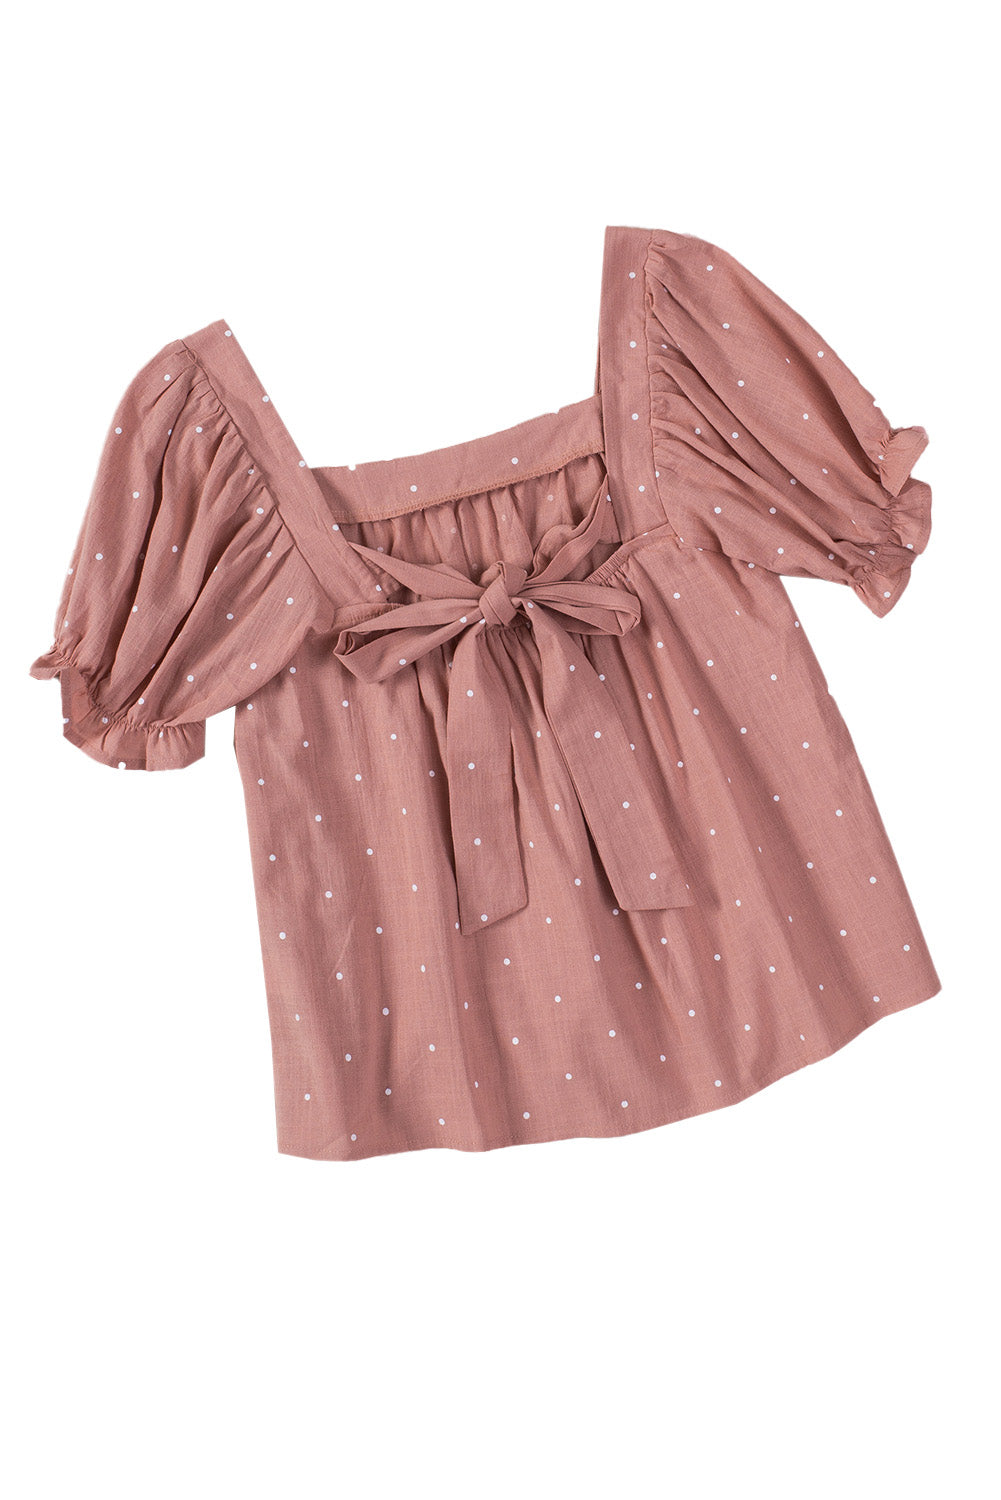 Rožnata bluza z napihnjenimi rokavi s kvadratnim ovratnikom in pikčastim potiskom na hrbtni strani